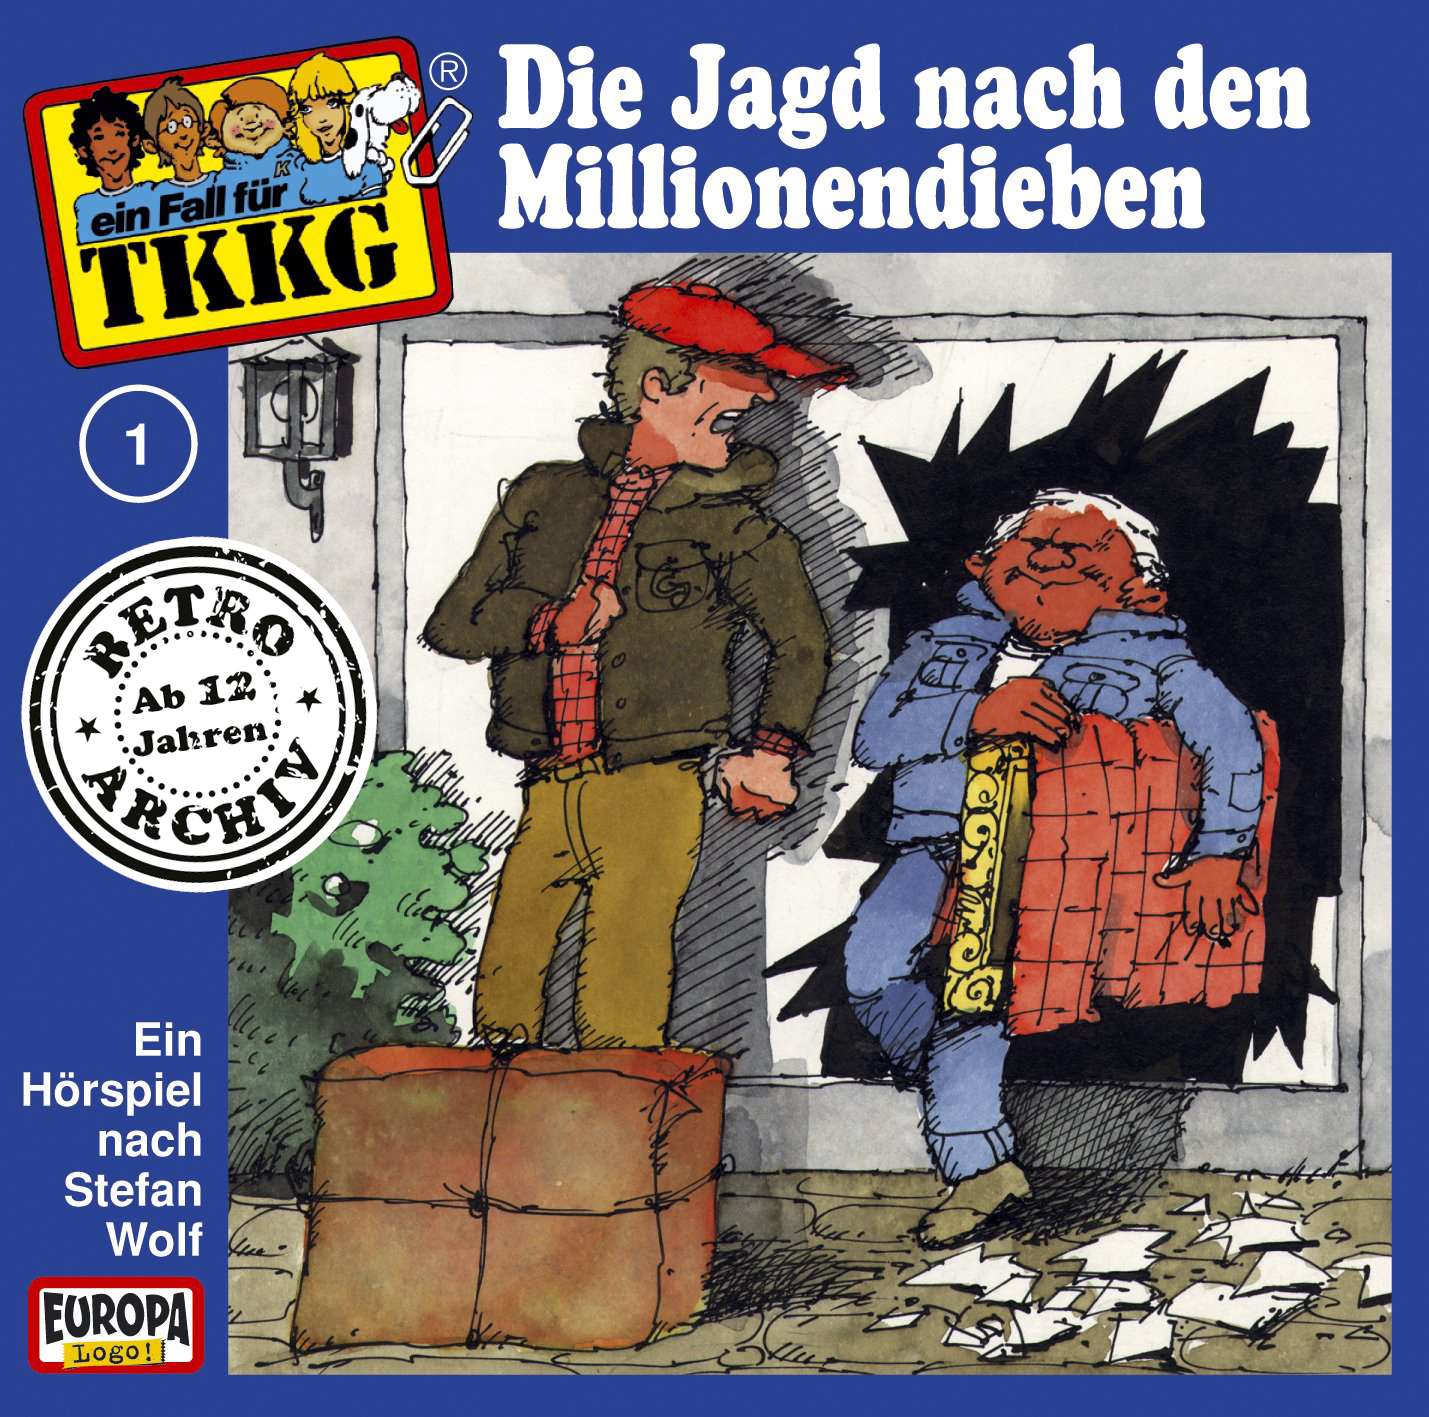 TKKG Retro-Archiv - Die Jagd nach den Millionendieben